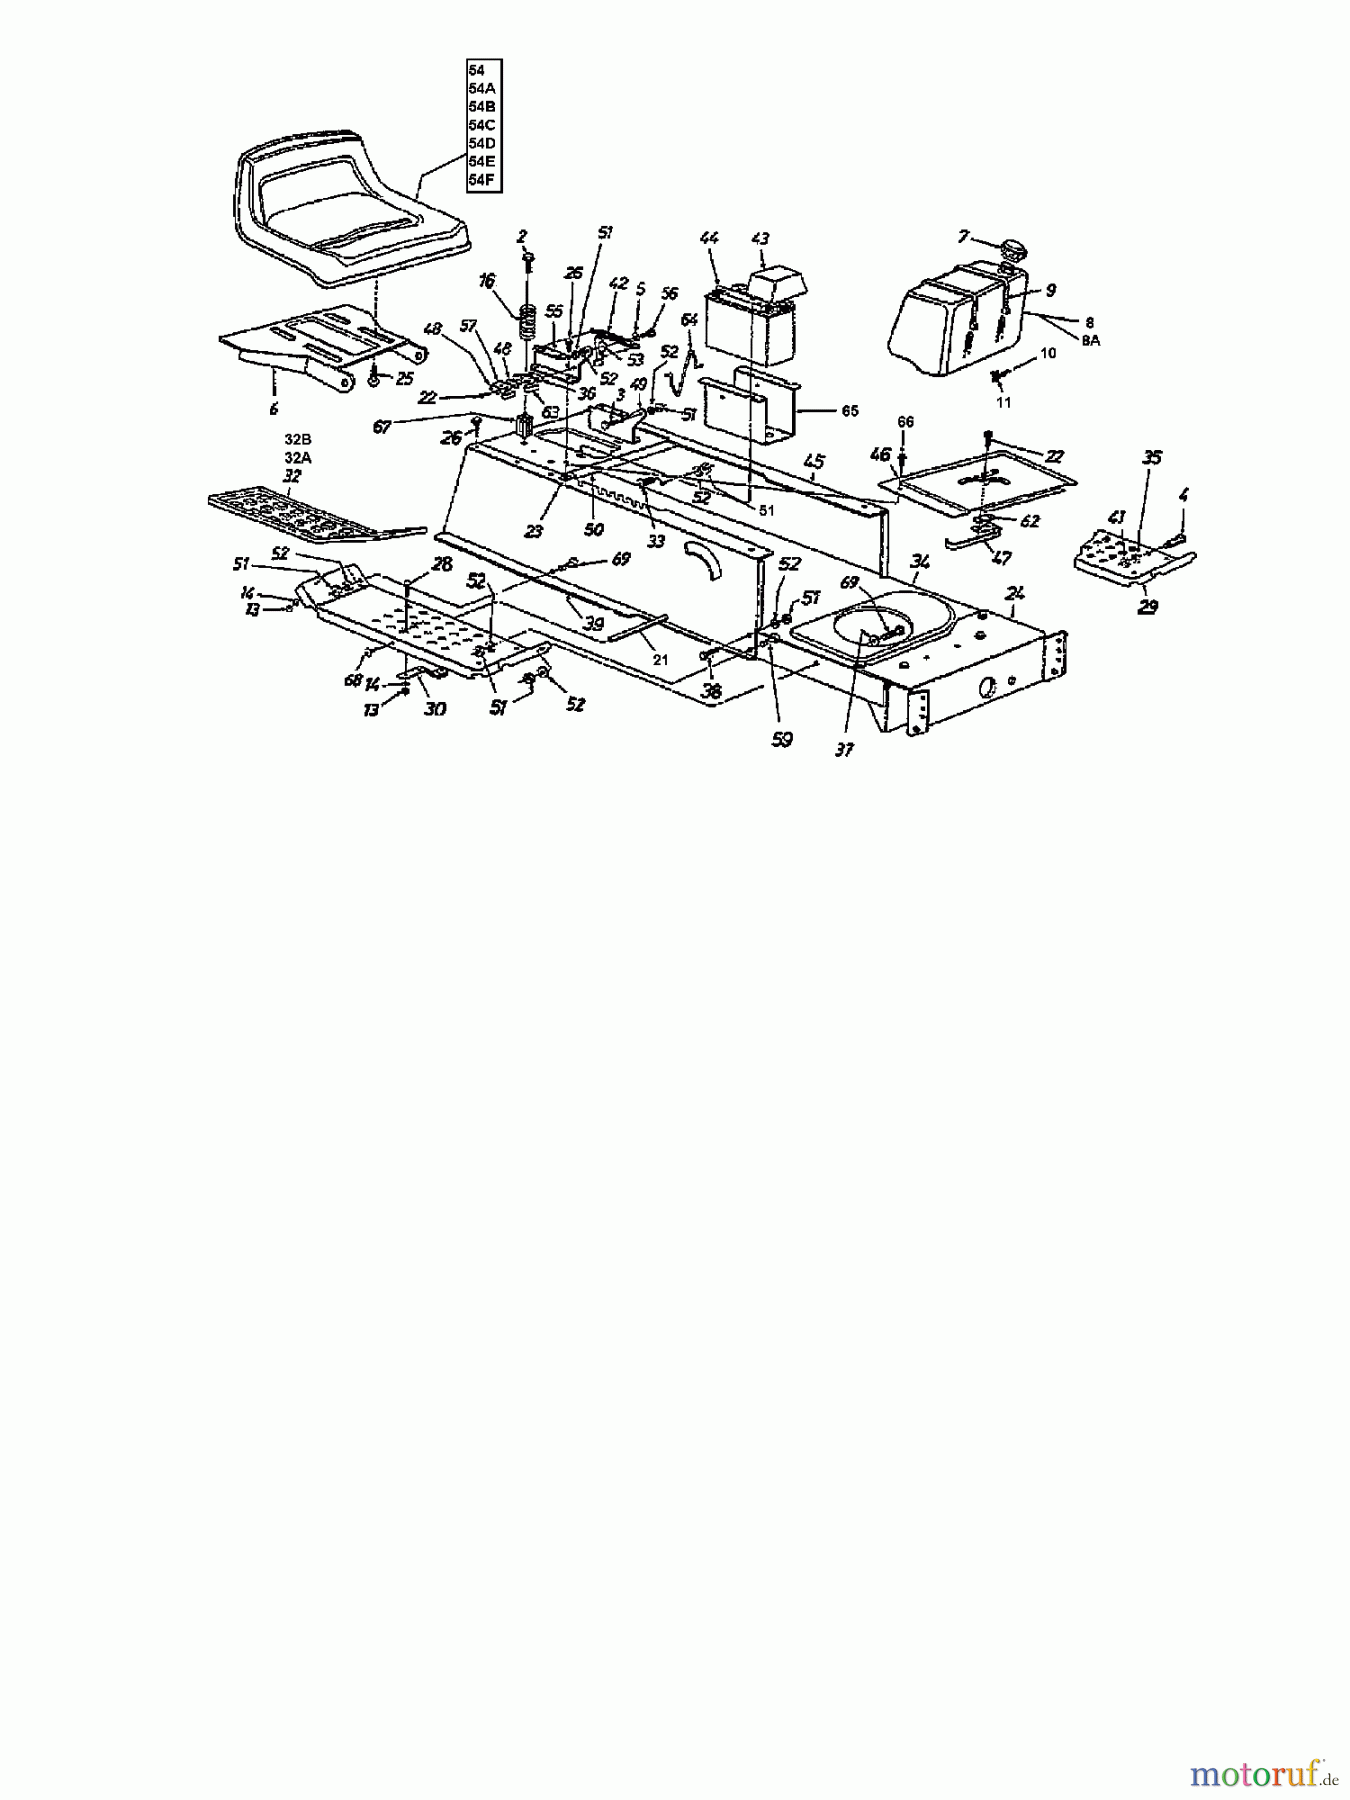  Brill Rasentraktoren (MTD Handelsmarke) Rasentraktoren 76/13 135N677C629  (1995) Rahmen, Sitz, Tank